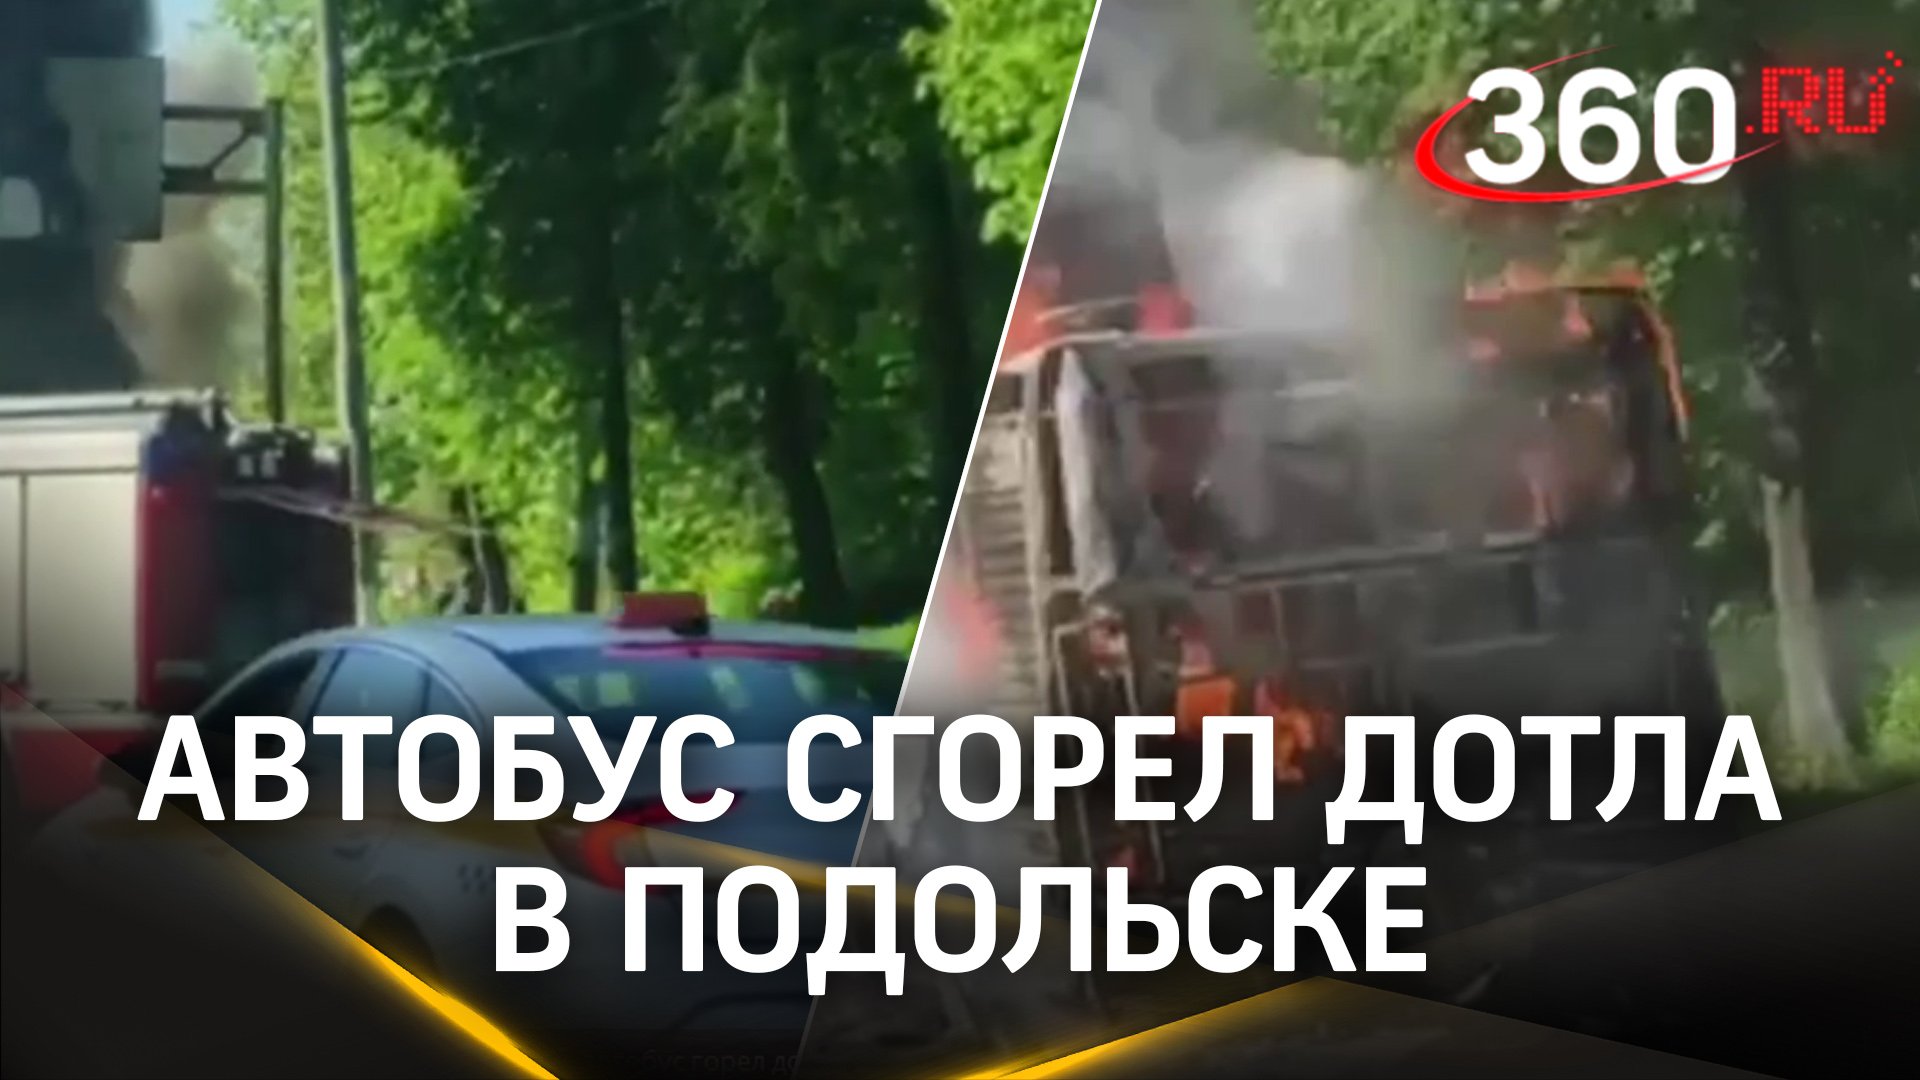 У кого-то выдалось горячее утро: в Подольске автобус горел дотла